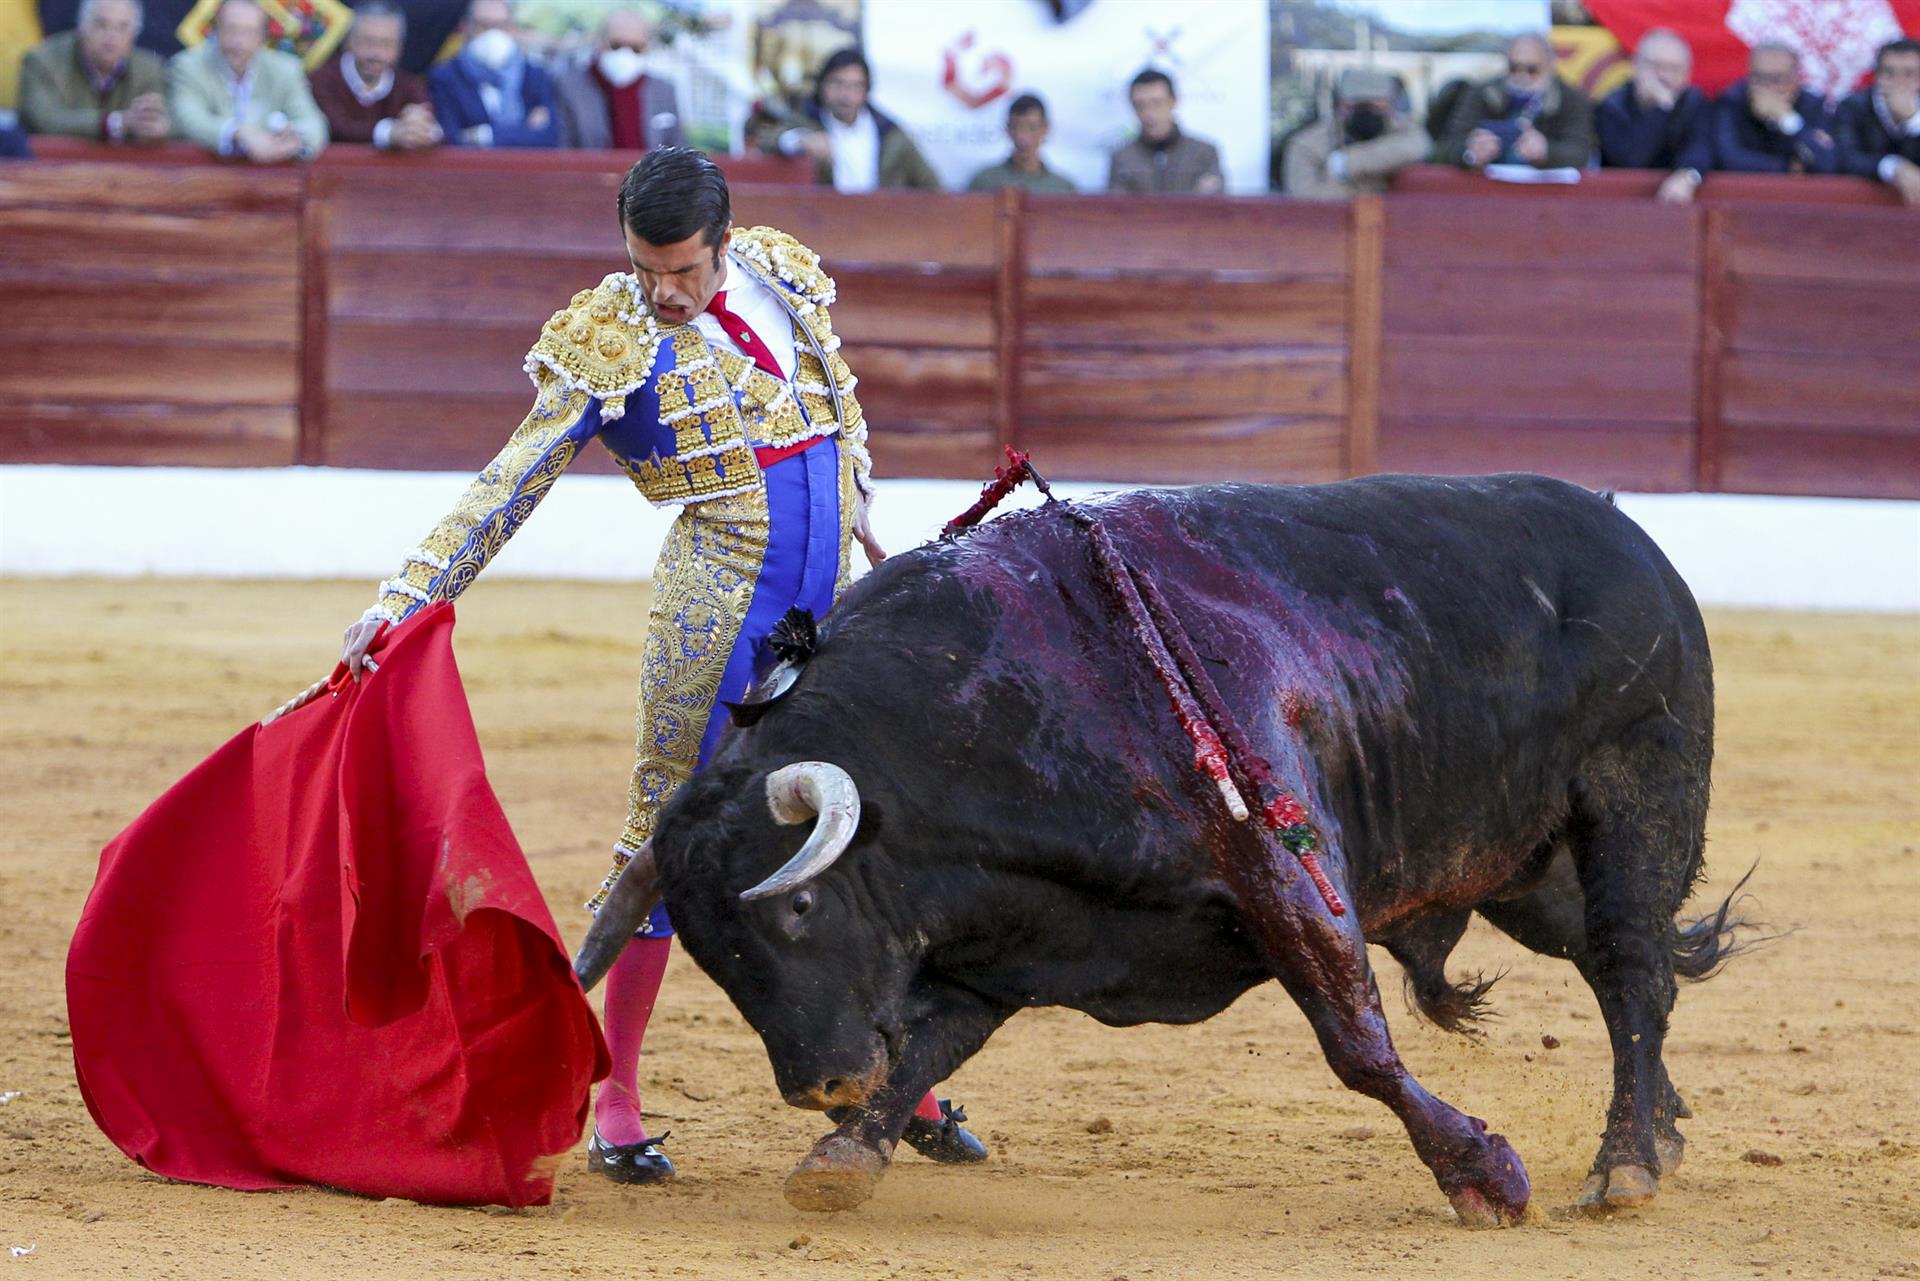 El diestro Emilio de Justo en la lidia de un toro de la ganadería de Zaluendo, este sábado en la Feria de Olivenza, que celebra su 31 edición tras el parón de los dos años anteriores por la pandemia.